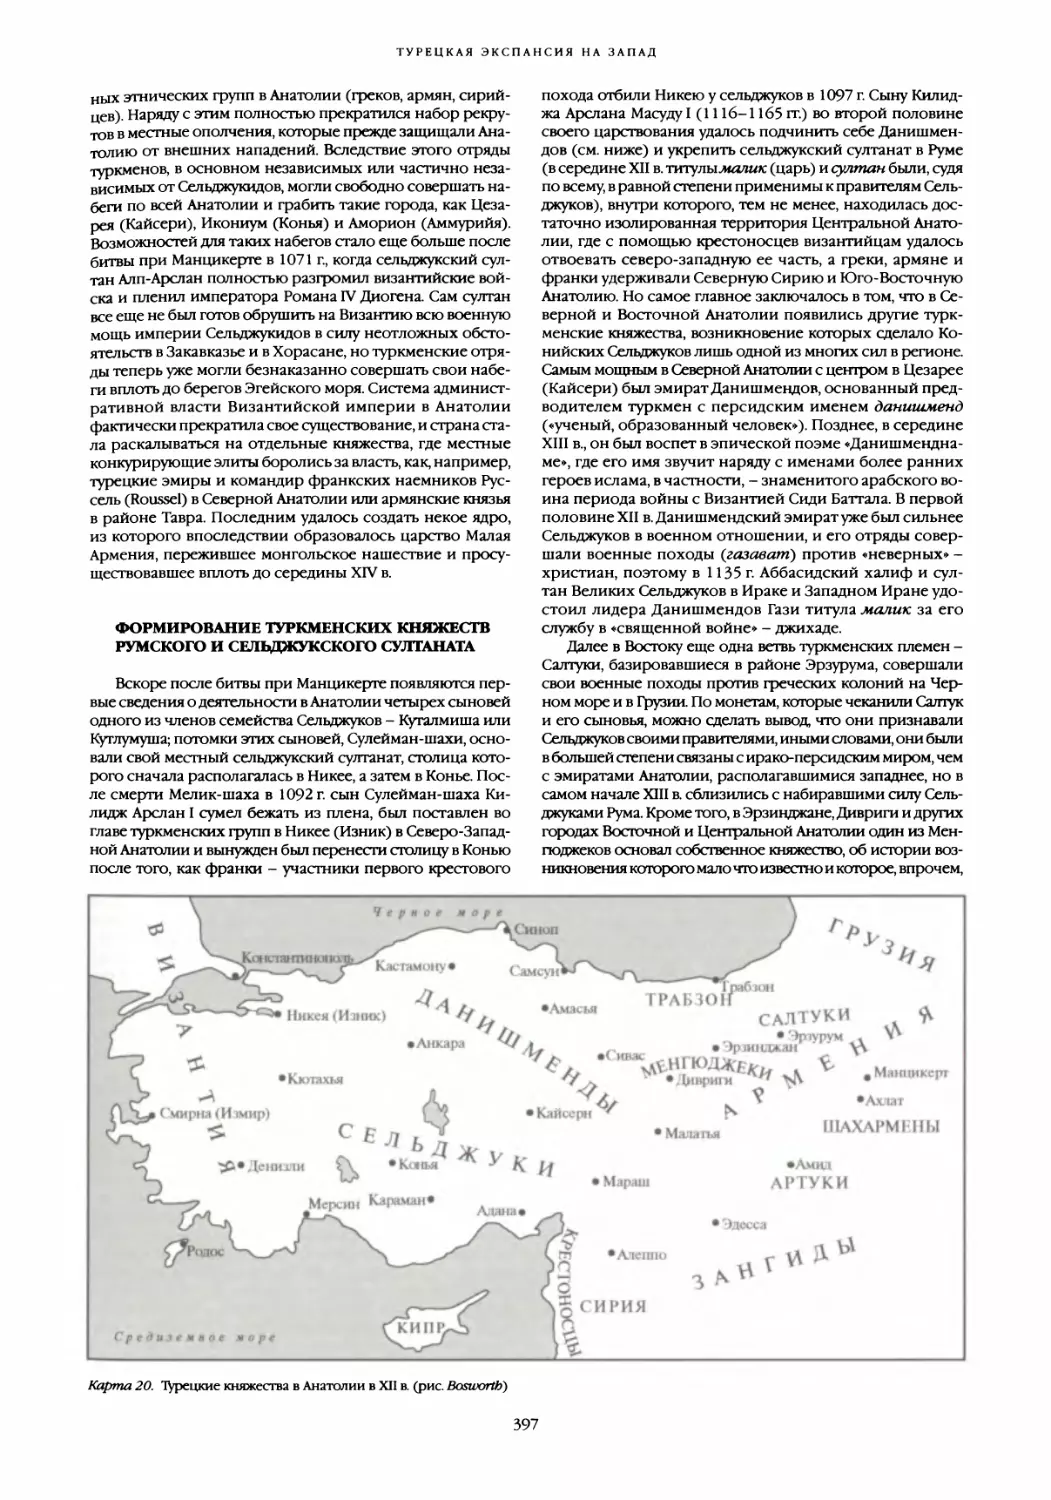 Формирование туркменских княжеств румского и сельджукского султаната